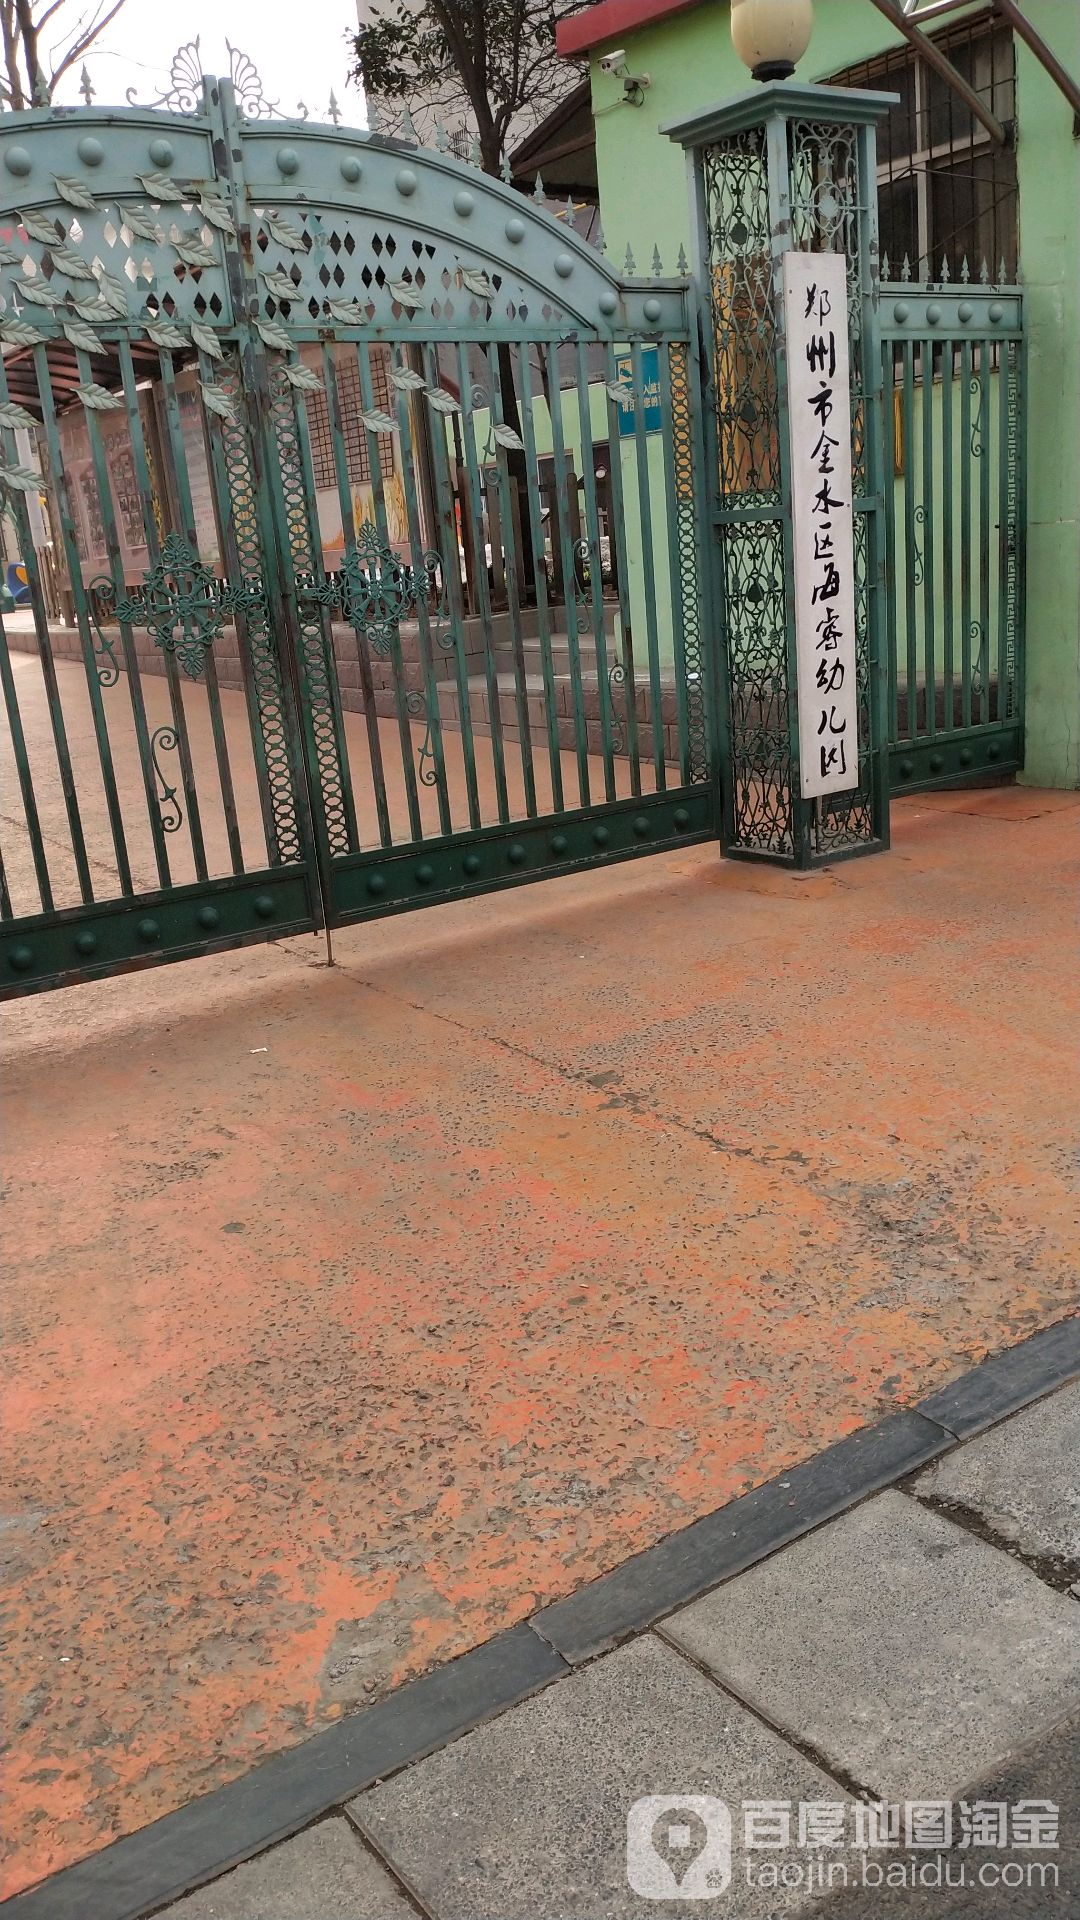 郑州市金水区海睿幼儿园的图片